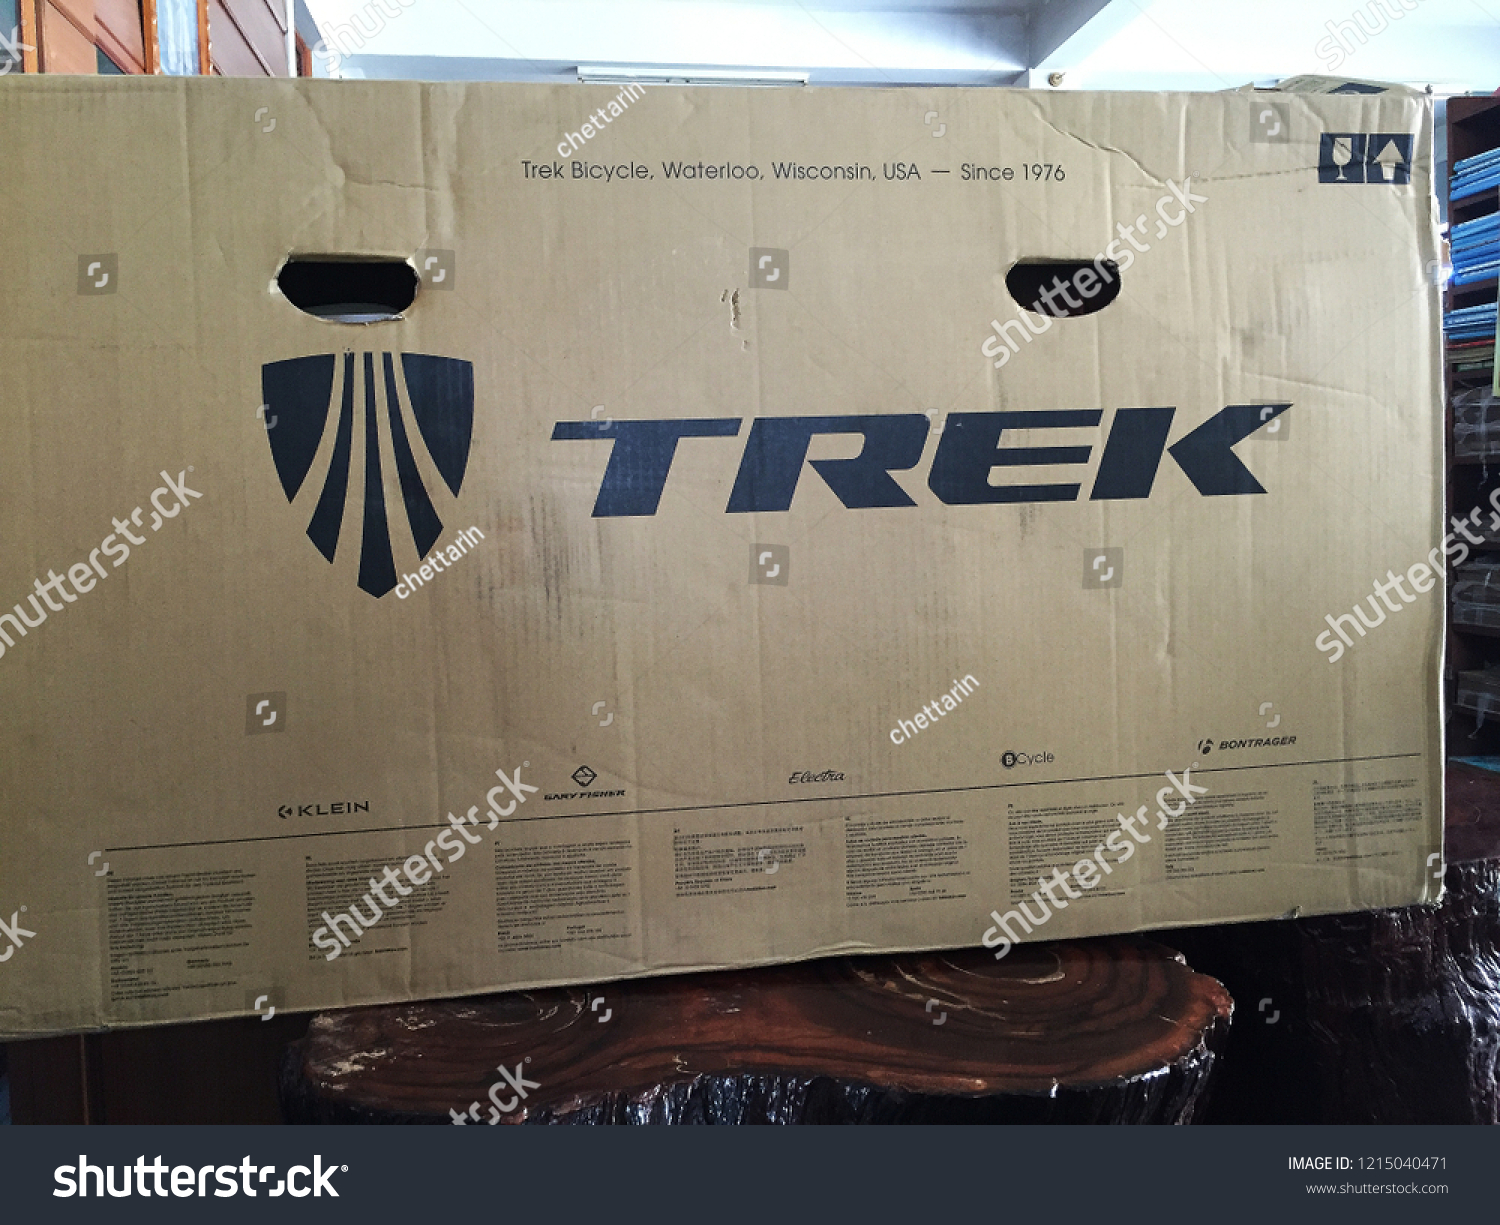 trek bike box